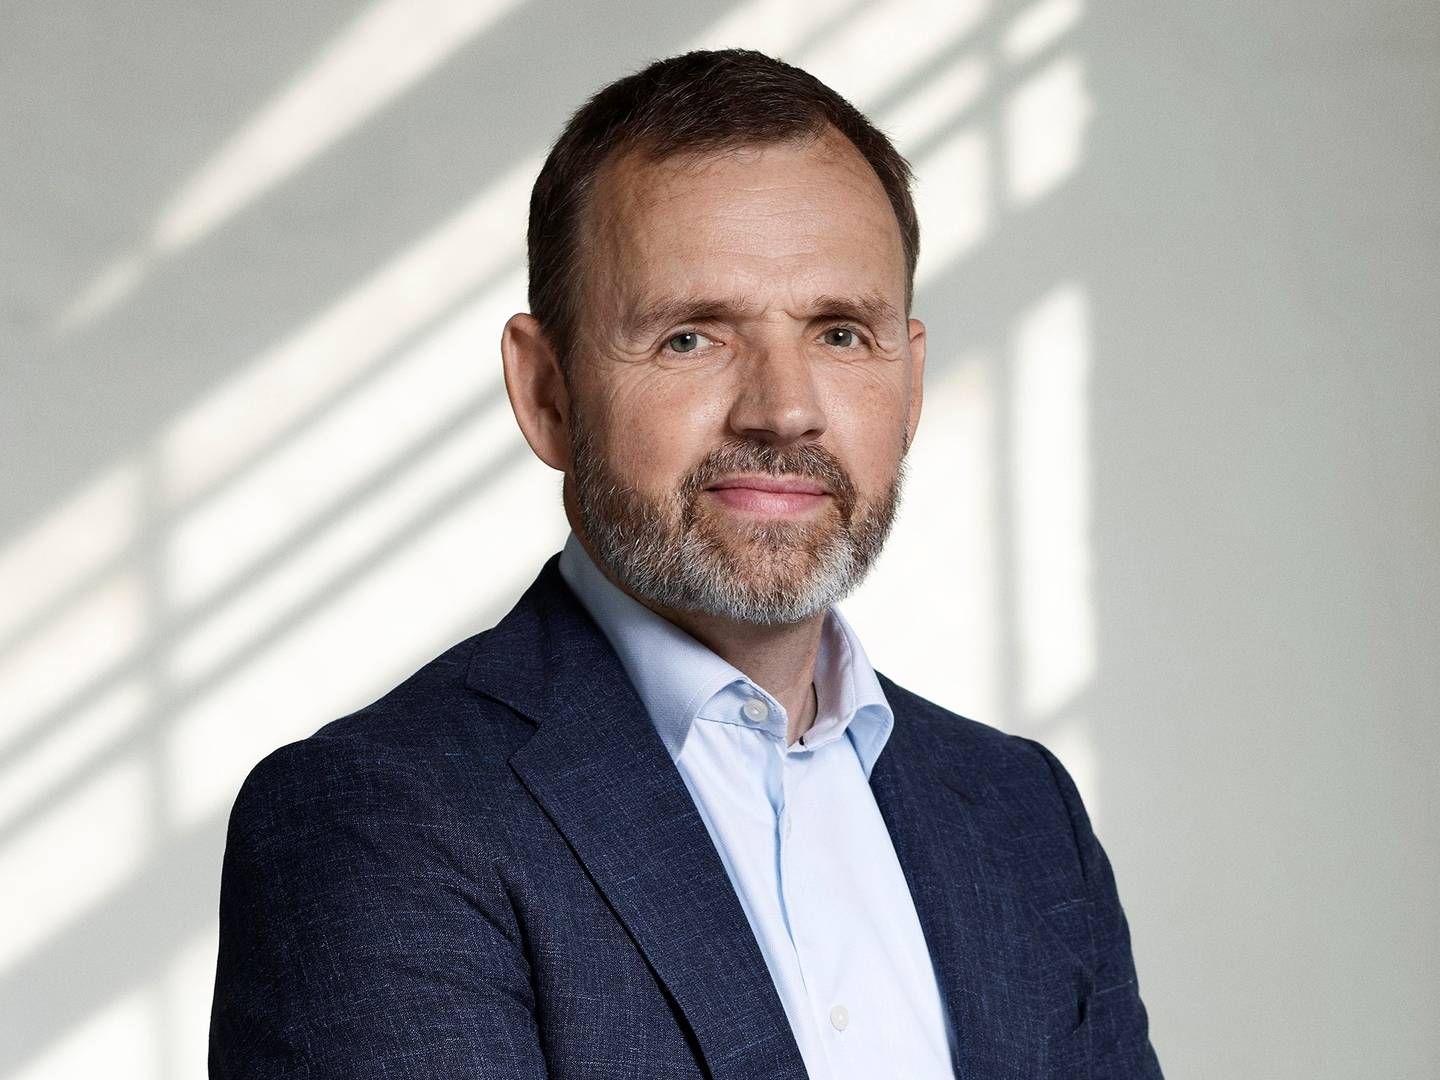 Thomas Kempf fratræder stillingen som adm. direktør hos Forende Service. | Foto: PR / Forenede Service